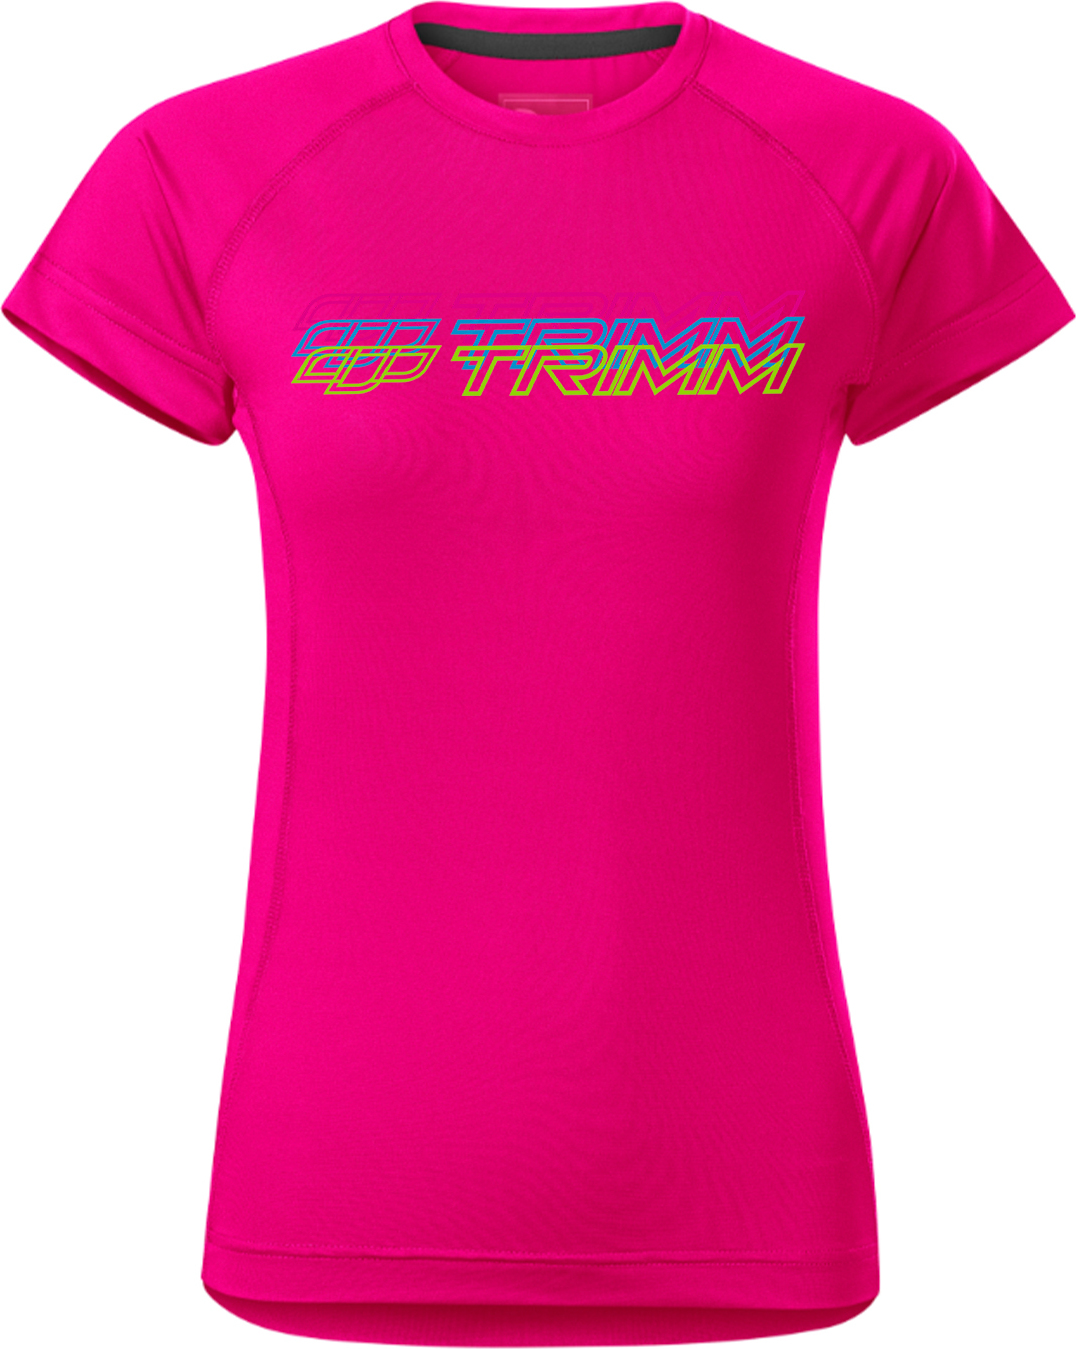 Dámské tričko TRIMM Destiny Lady růžové Velikost: XS, Barva: neon pink